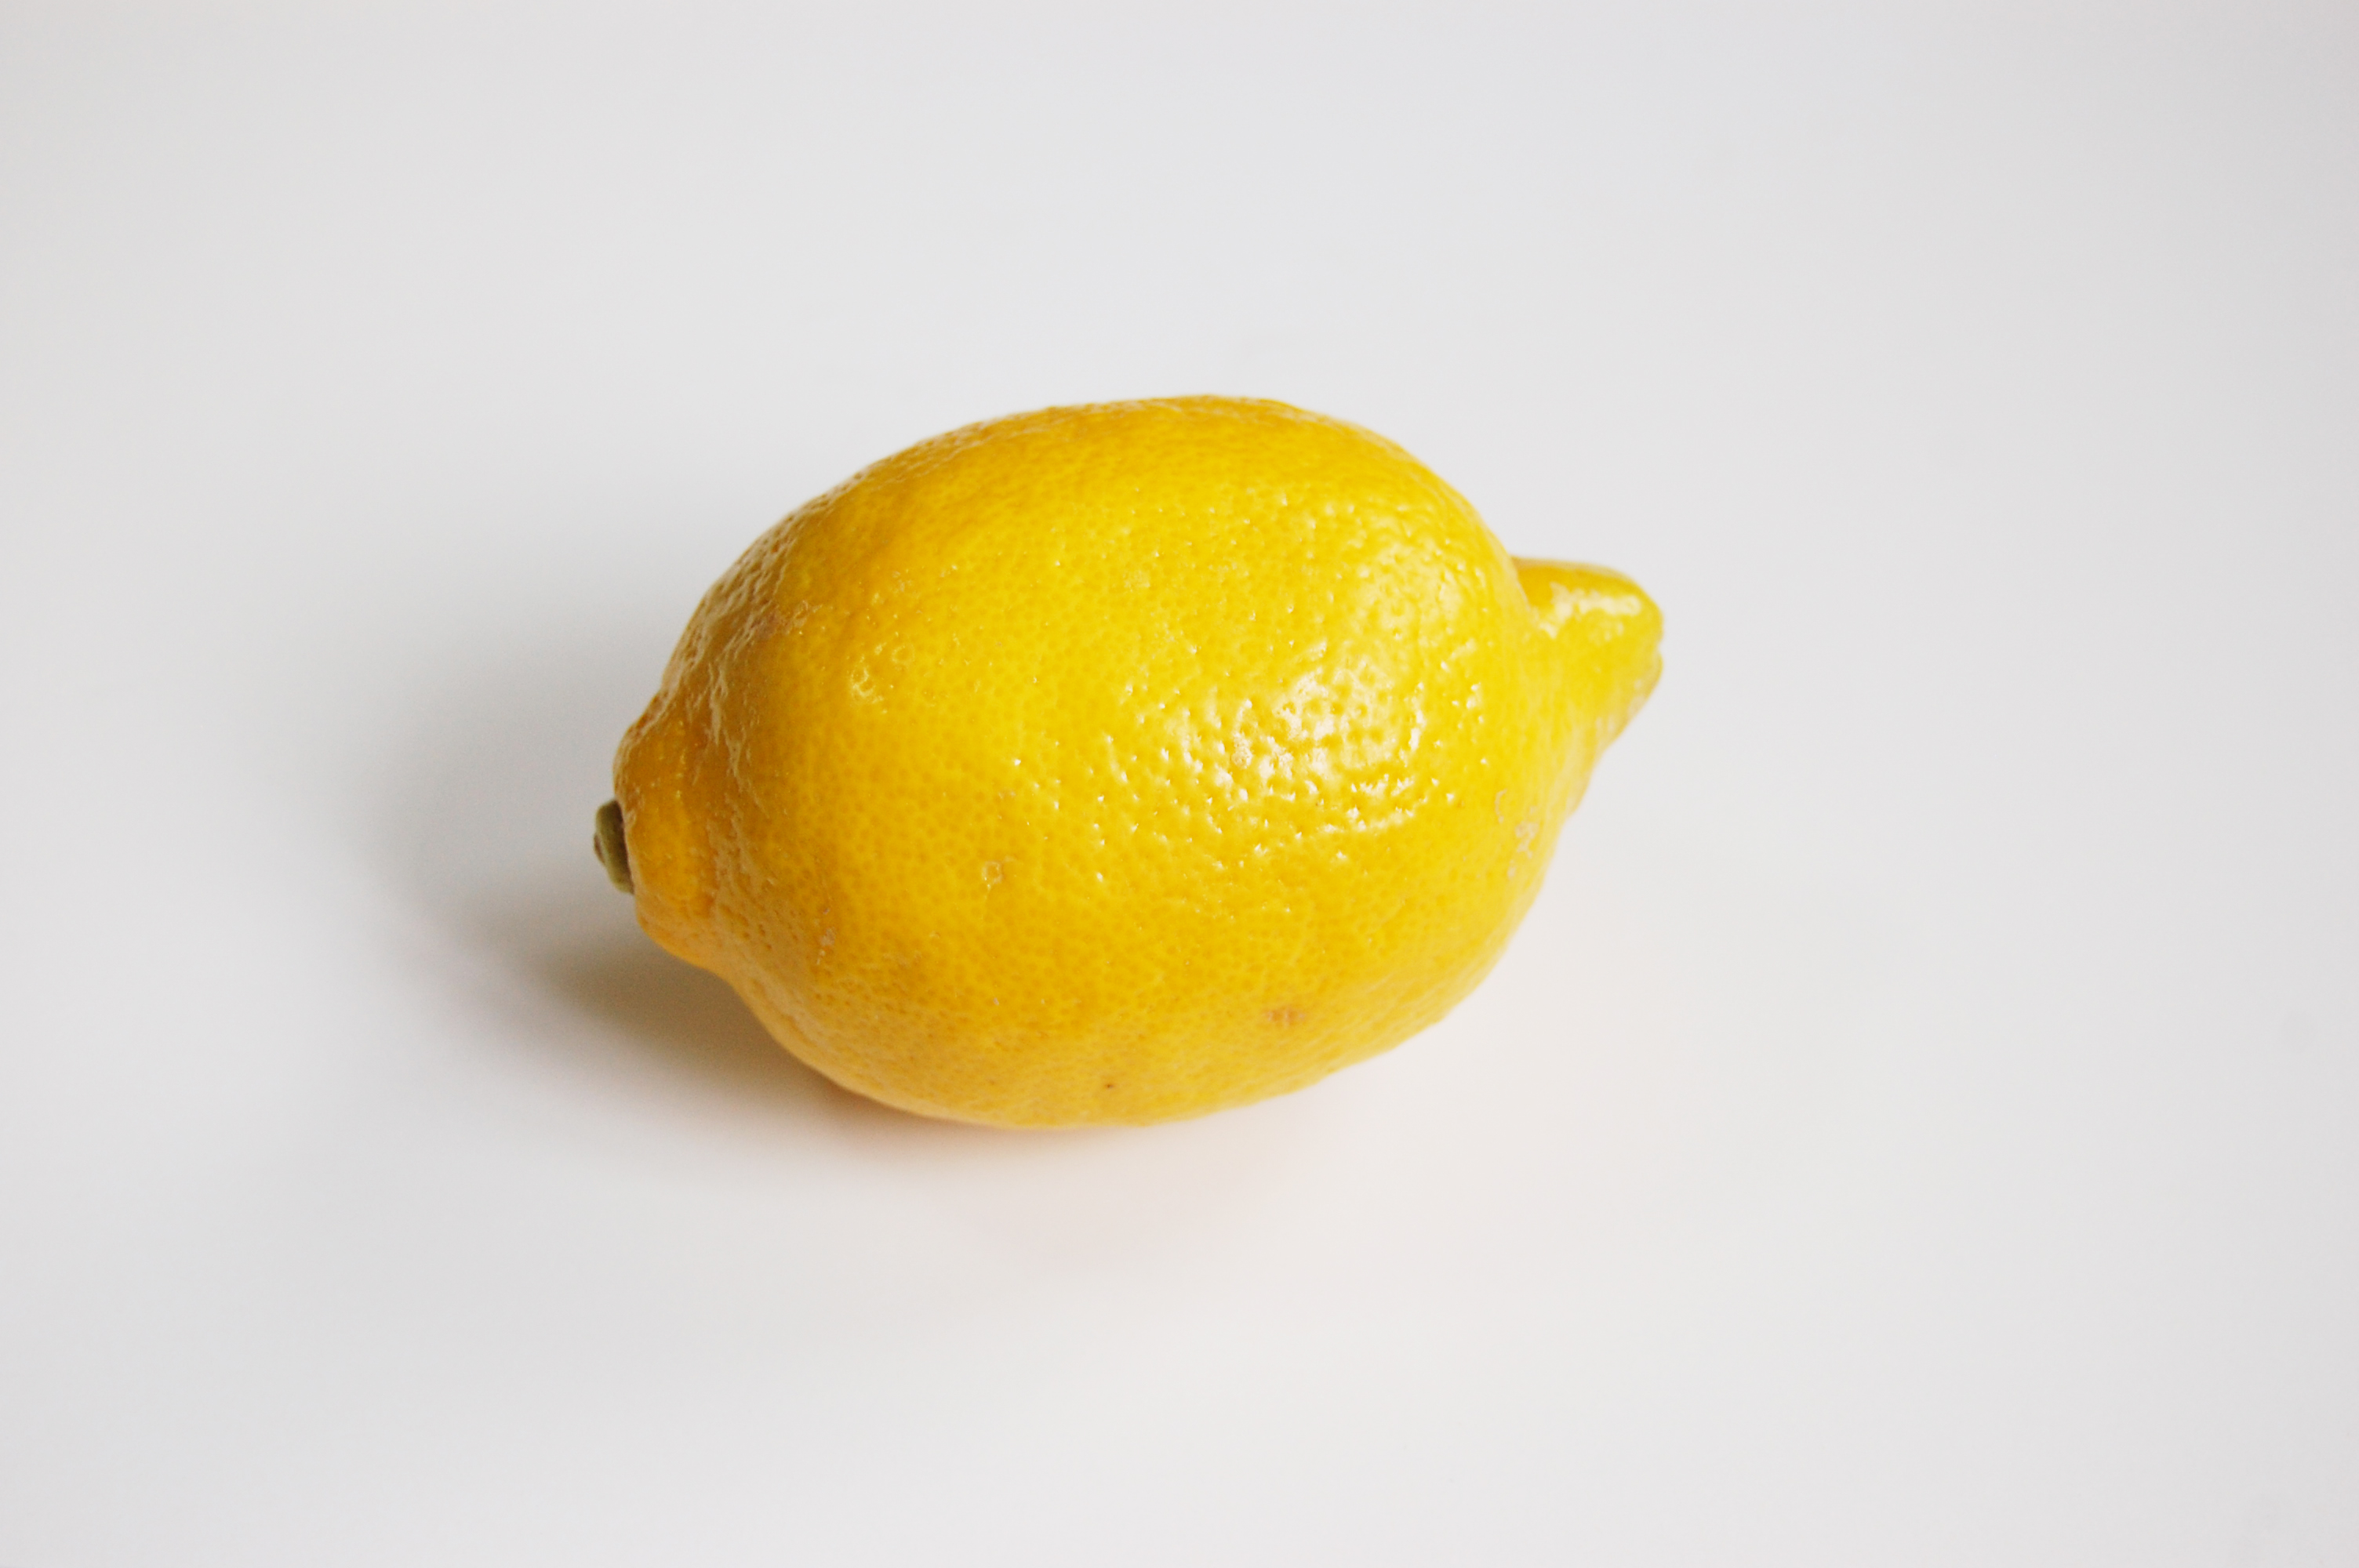 レモン フリー 素材 フリー素材 無料画像の横断検索サイトno 1 タダピク